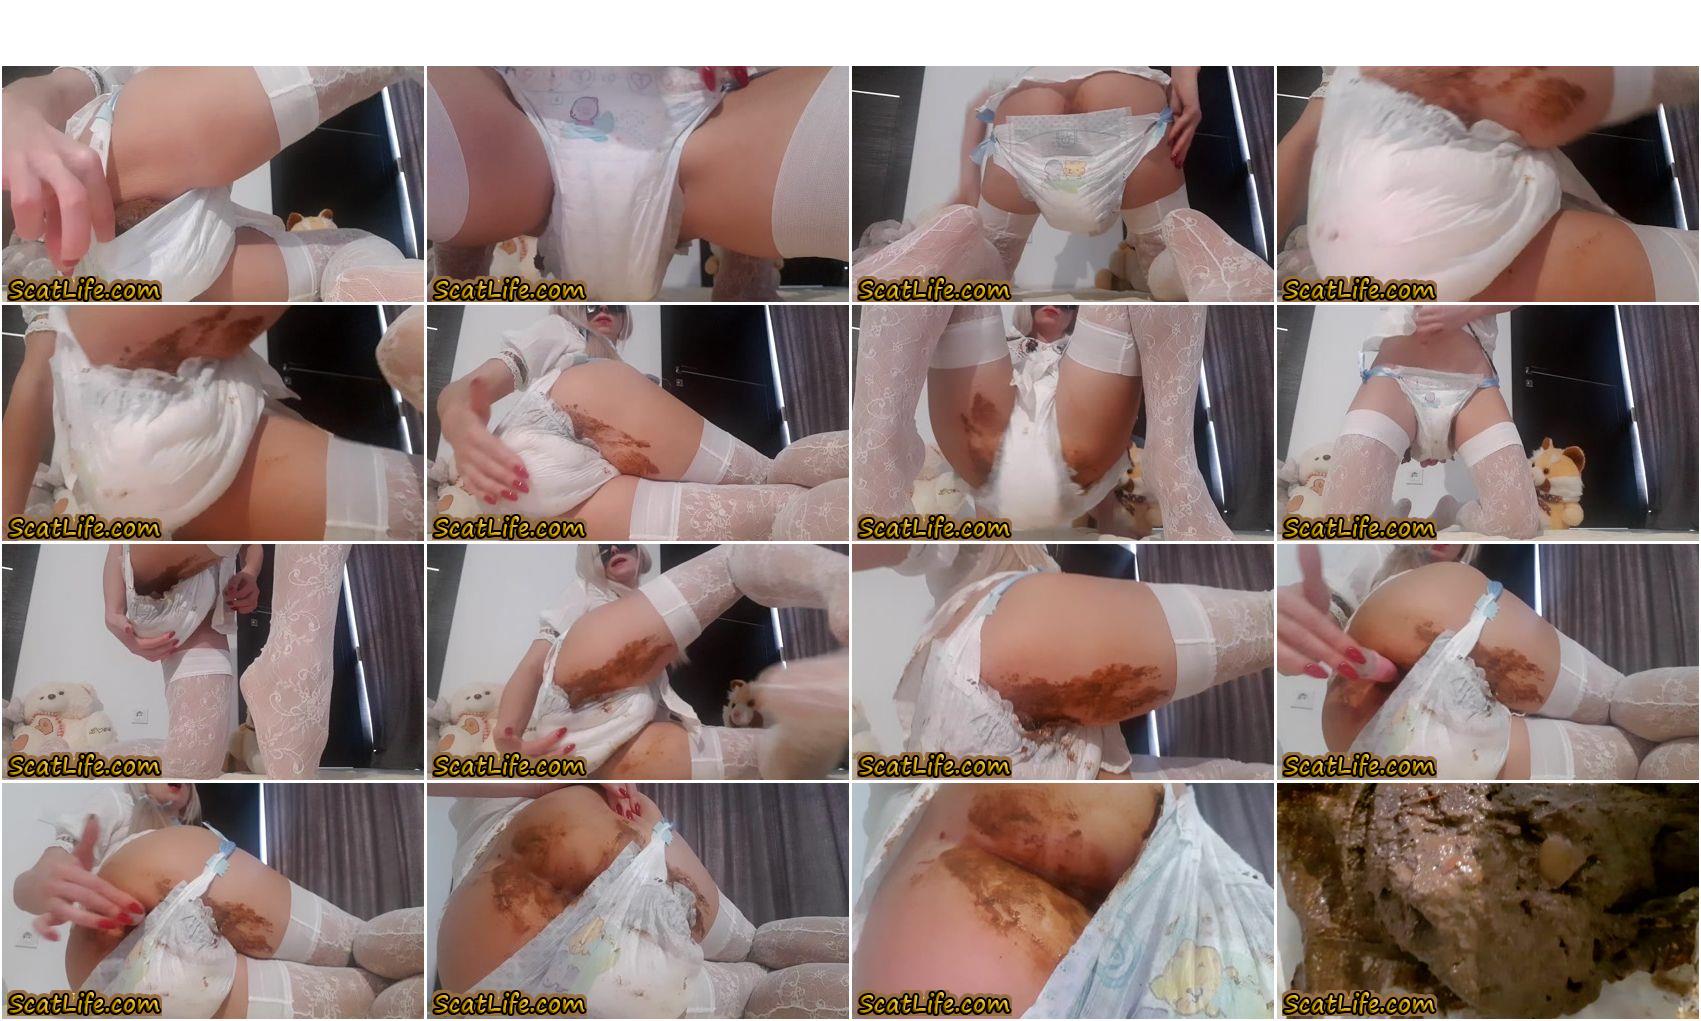 Poop Videos Little Nasty Girl Diapered Thefartbabes ABDL Scat Porn